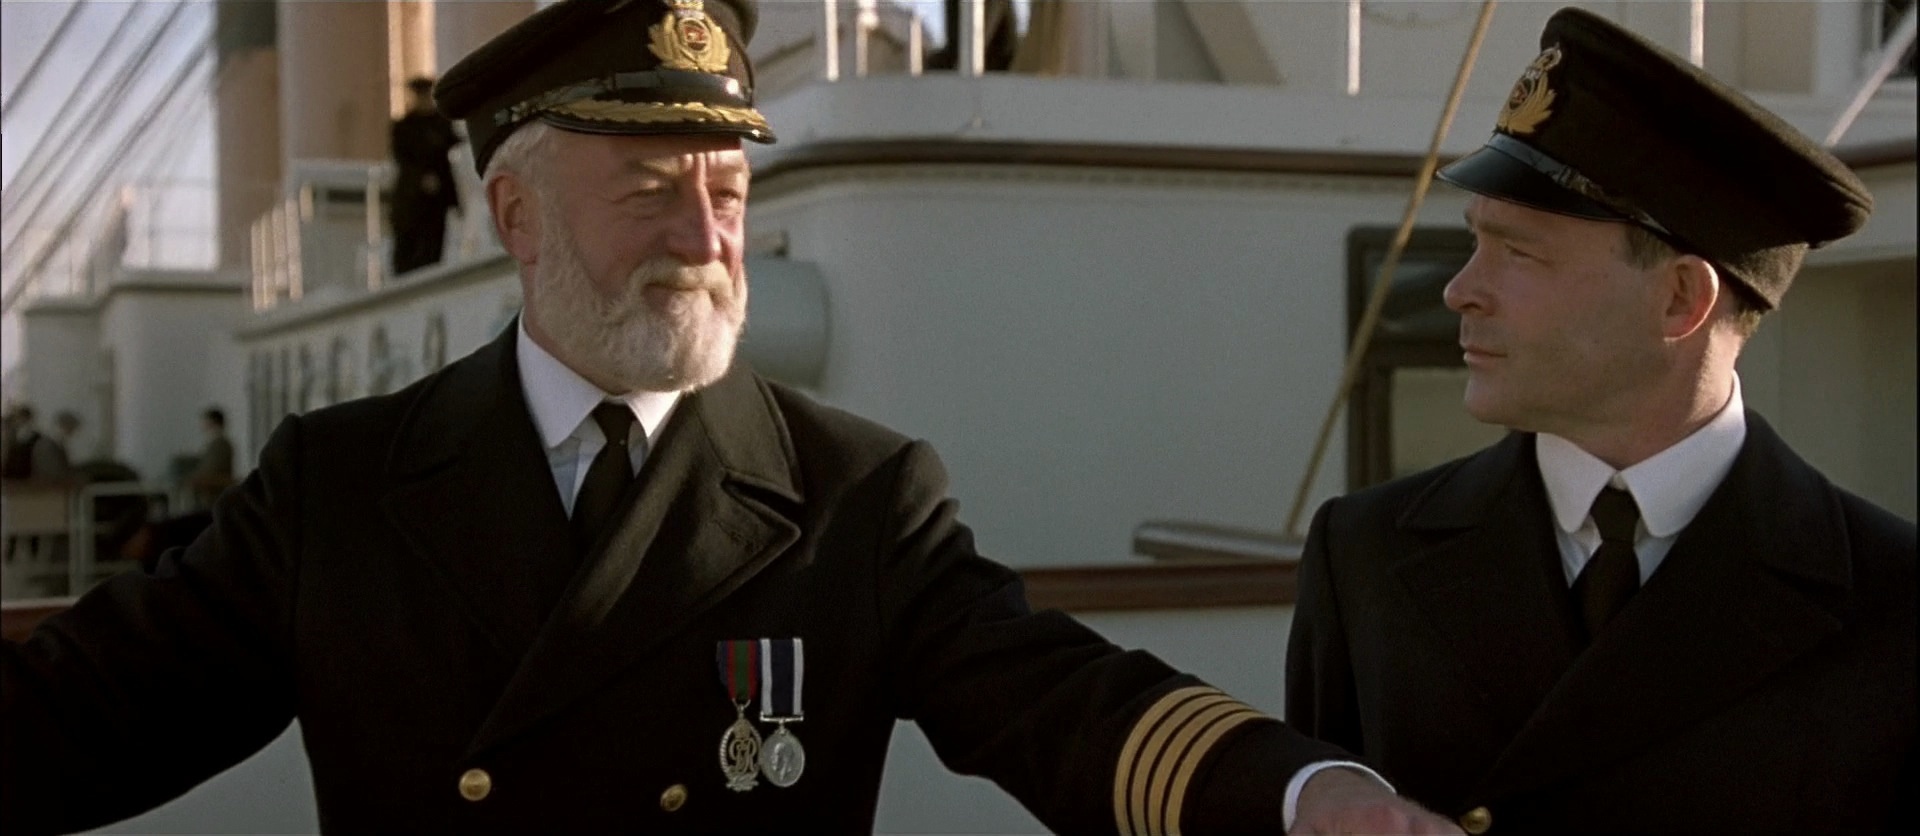 Туда где был капитаном корабля. Уильям Мердок Титаник 1997.